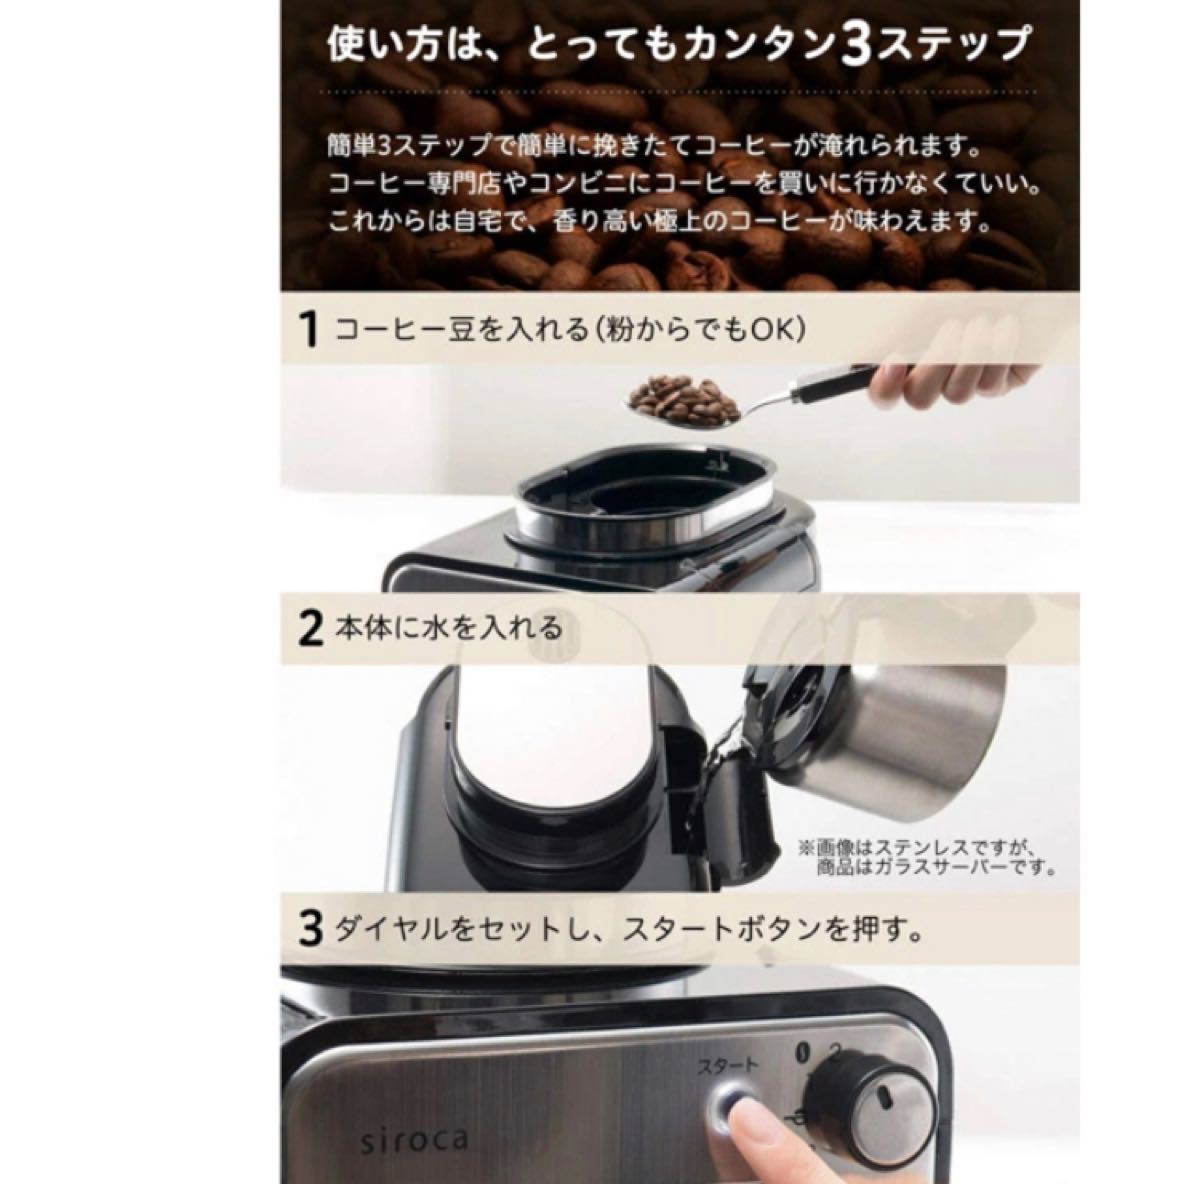 【新品未使用】シロカ　全自動コーヒーメーカー　SC-A211(K/SS)